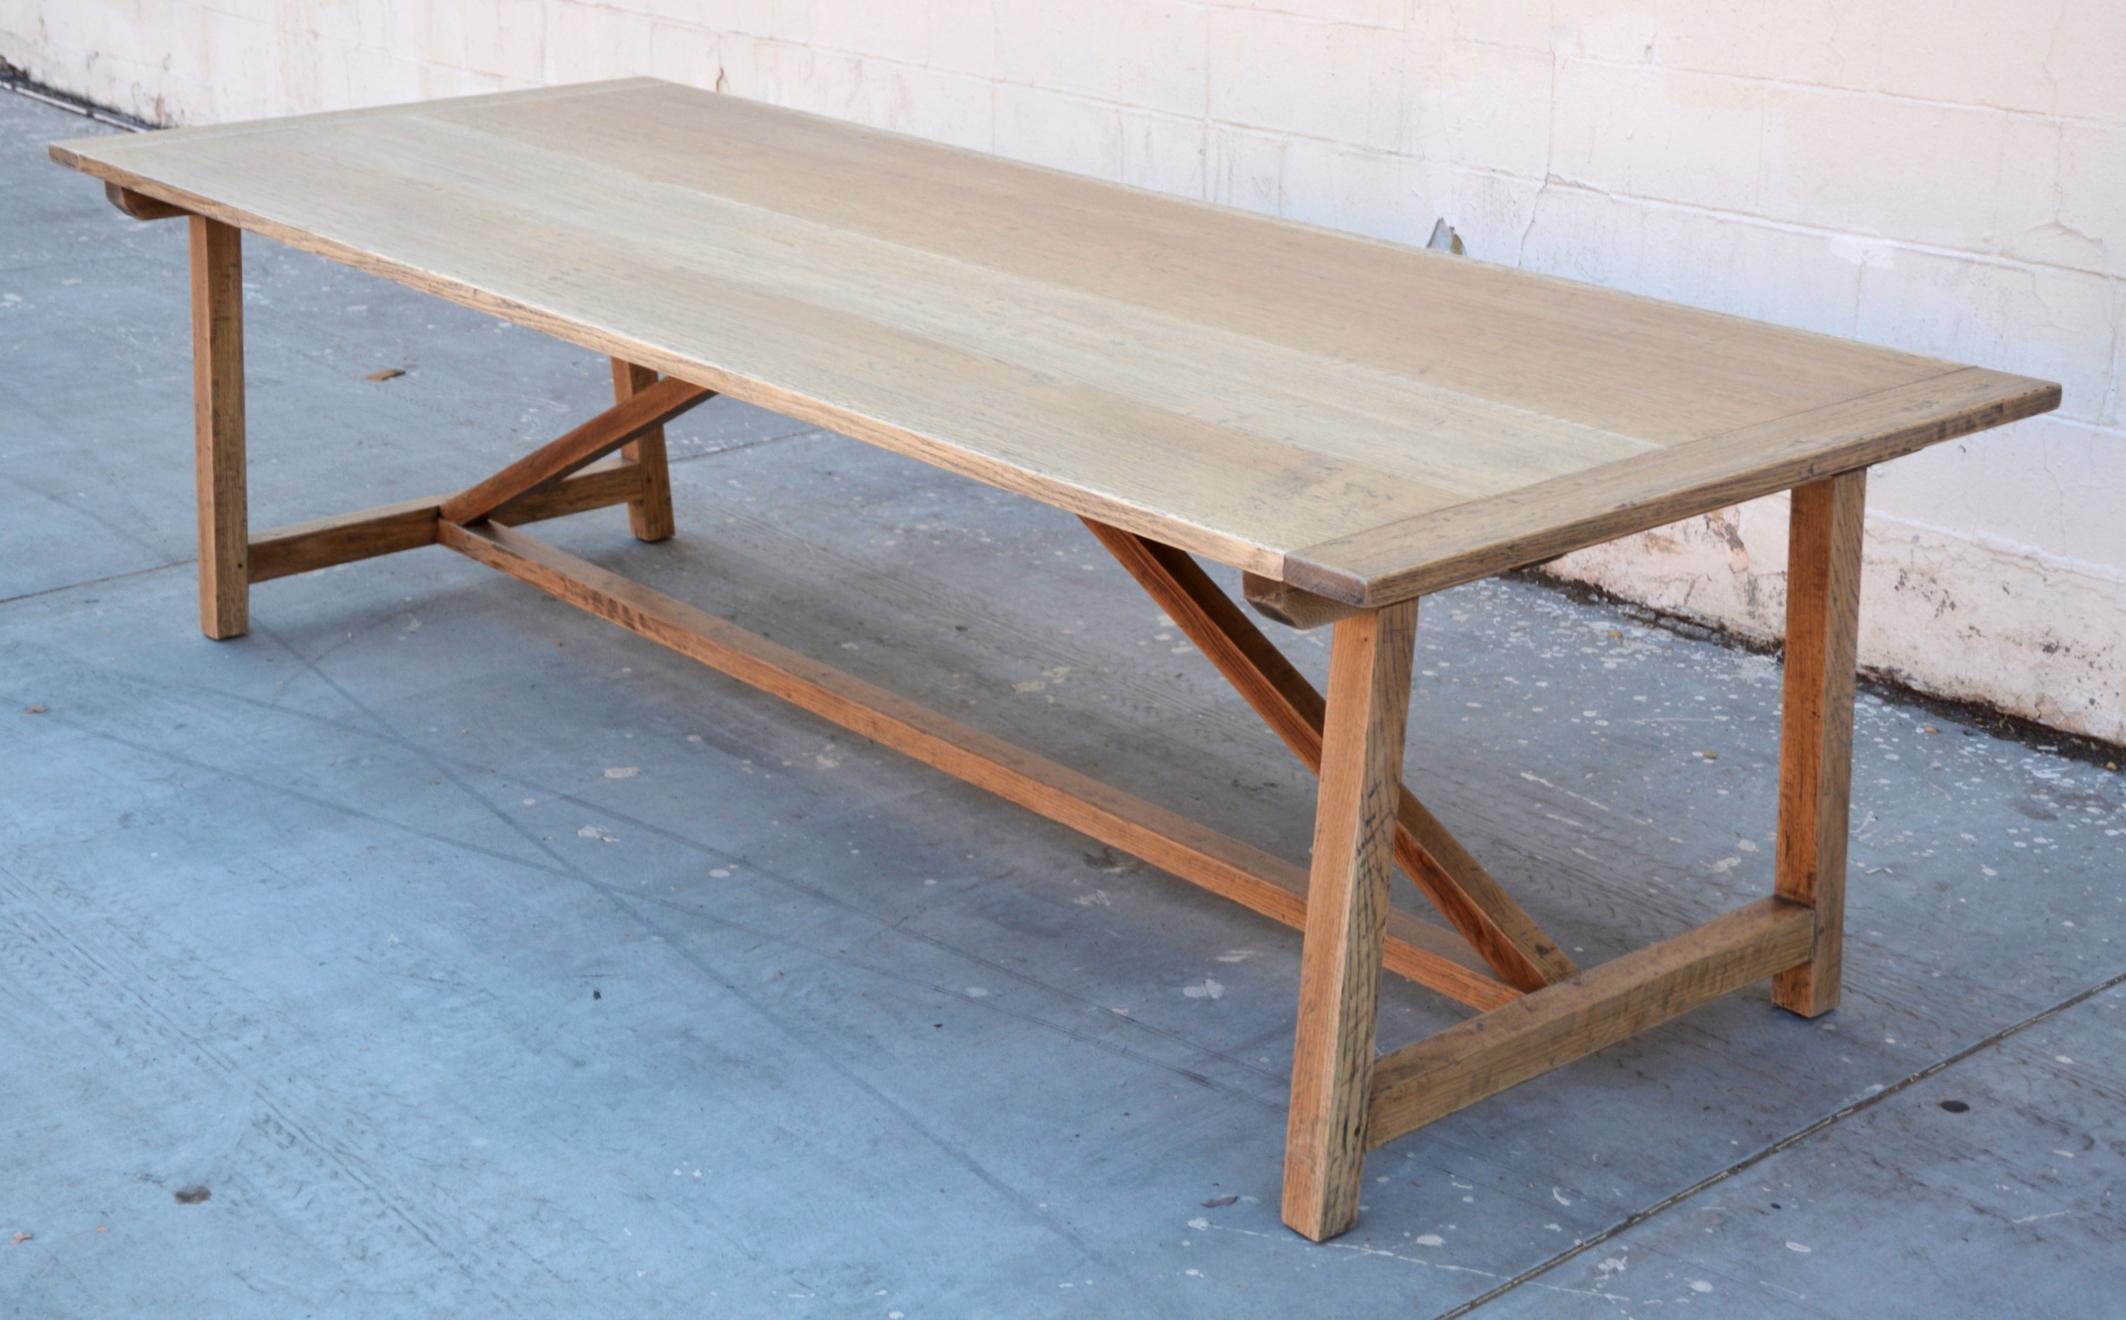 Dieser maßgefertigte Bauernhoftisch ist aus gealterter, riftgesägter Eiche gefertigt und kann mit oder ohne Verlängerungsplatten hergestellt werden. Der hier gezeigte Tisch ist 112